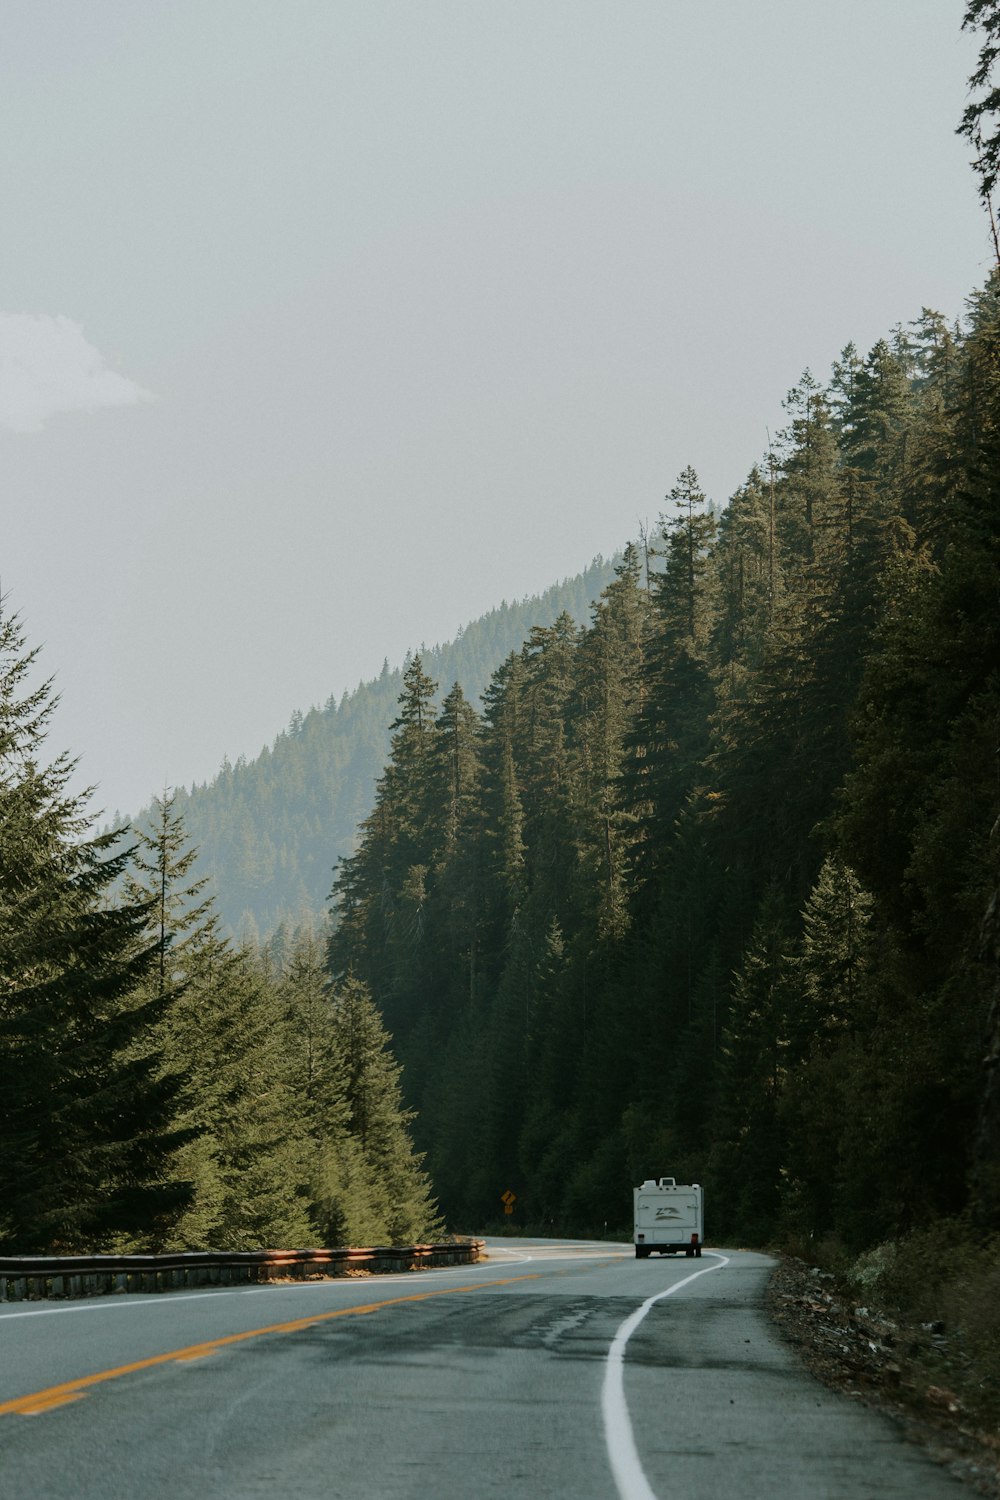 Fotografía de paisajes de carreteras y bosques